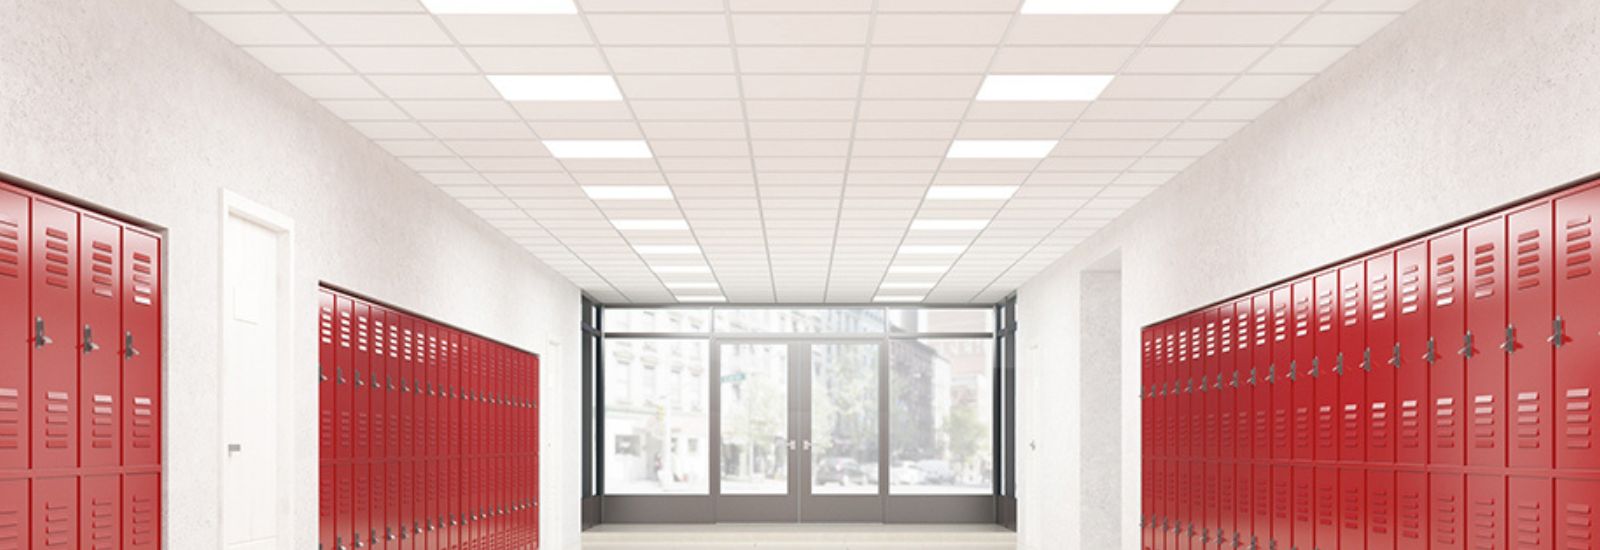 energy efficient lighting for schools